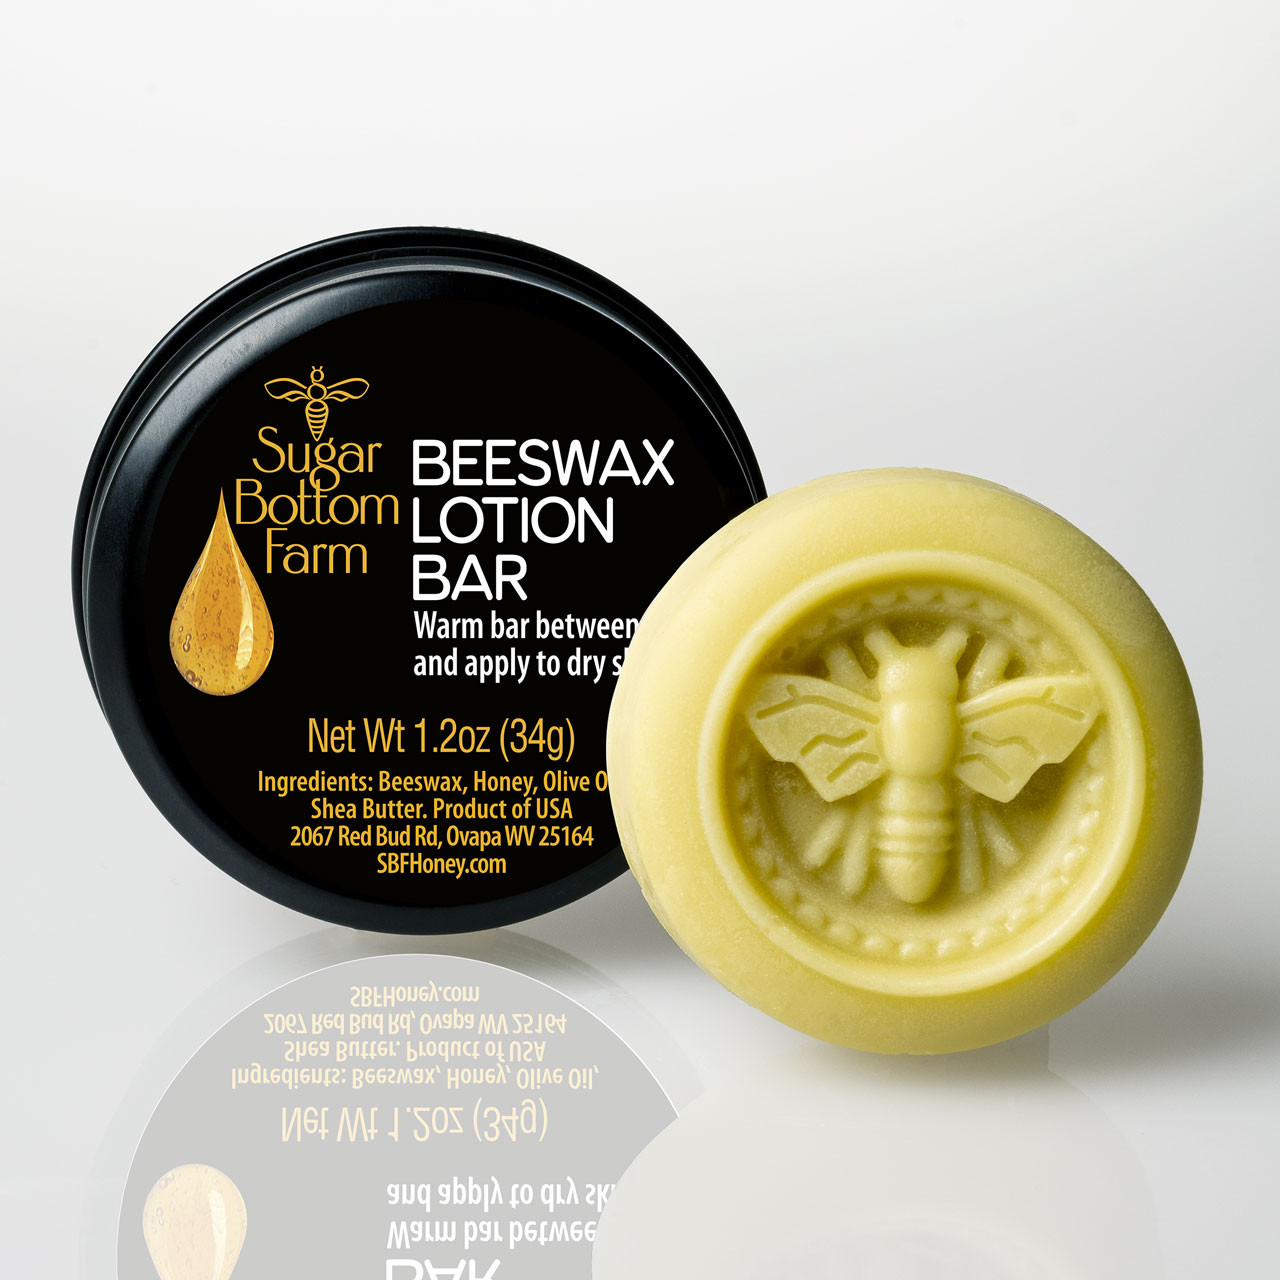 Bee's Wax Lotion Bar